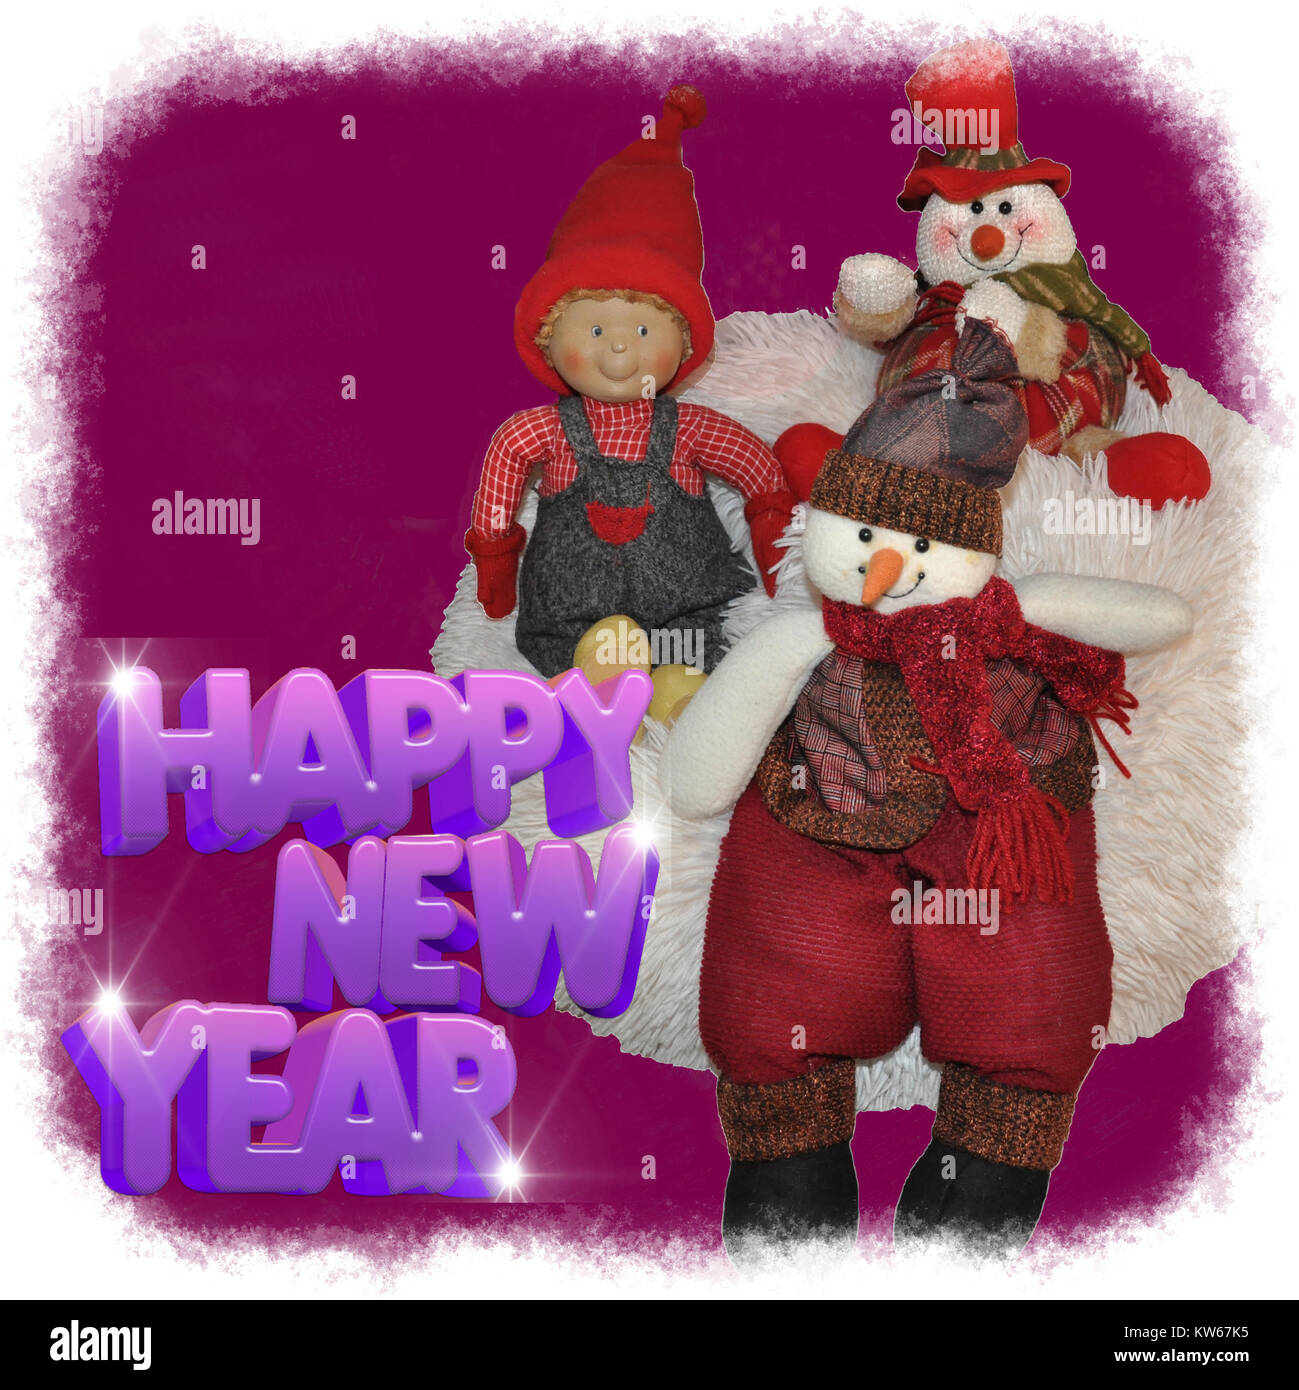 Weihnachten Hintergrund und Wünsche - Frohes neues Jahr Stockfoto